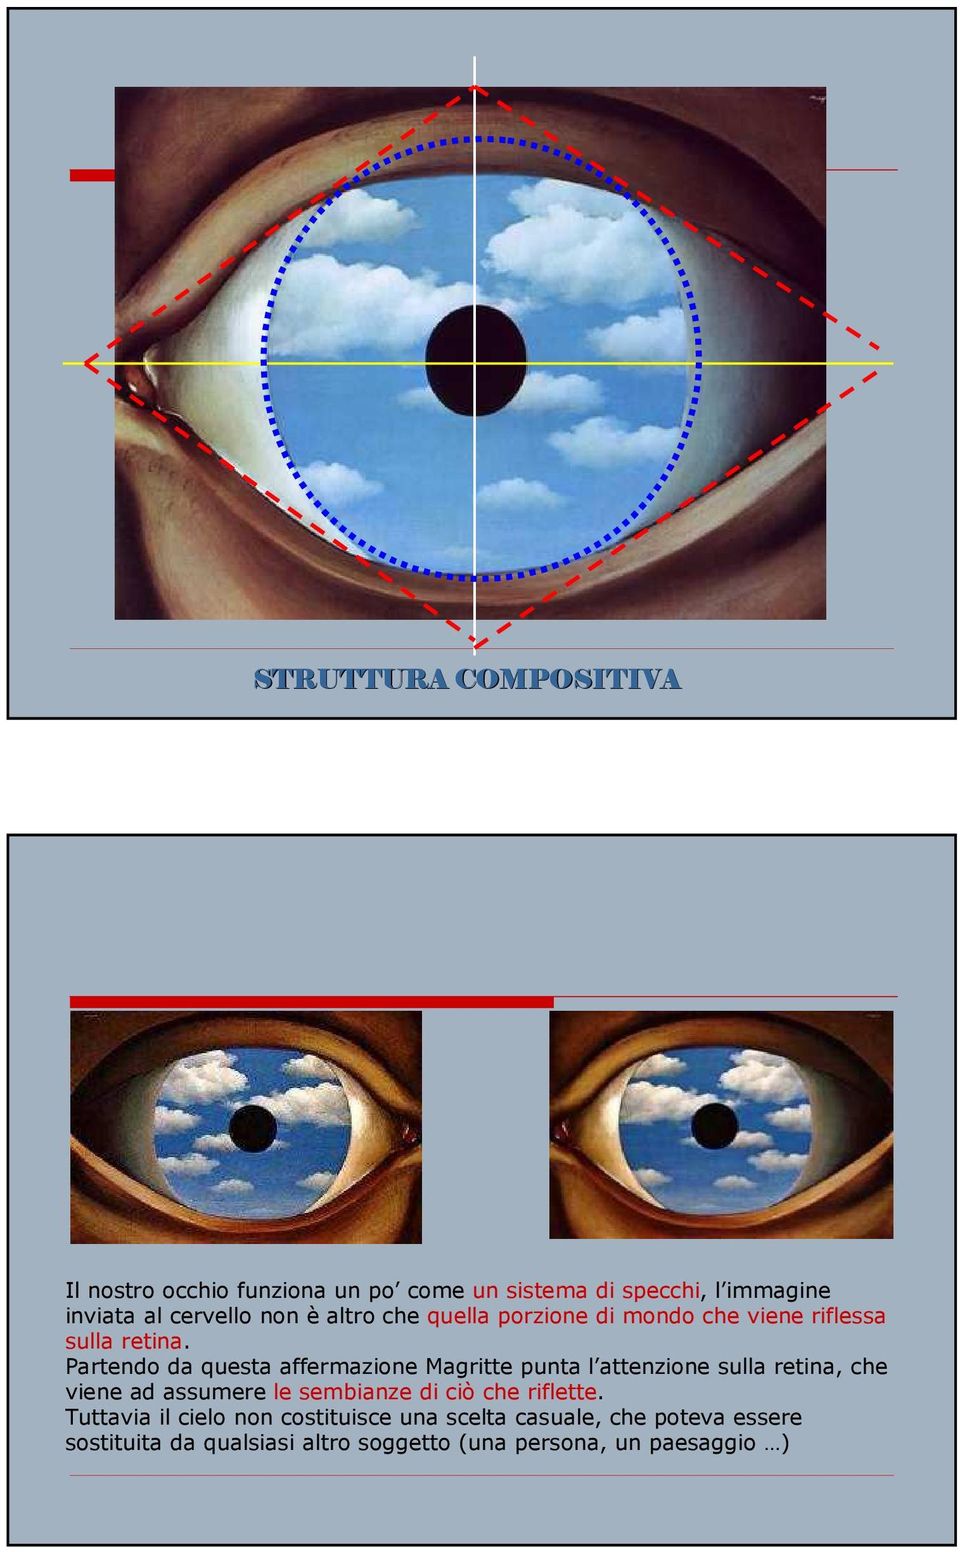 Partendo da questa affermazione Magritte punta l attenzione sulla retina, che viene ad assumere le sembianze di